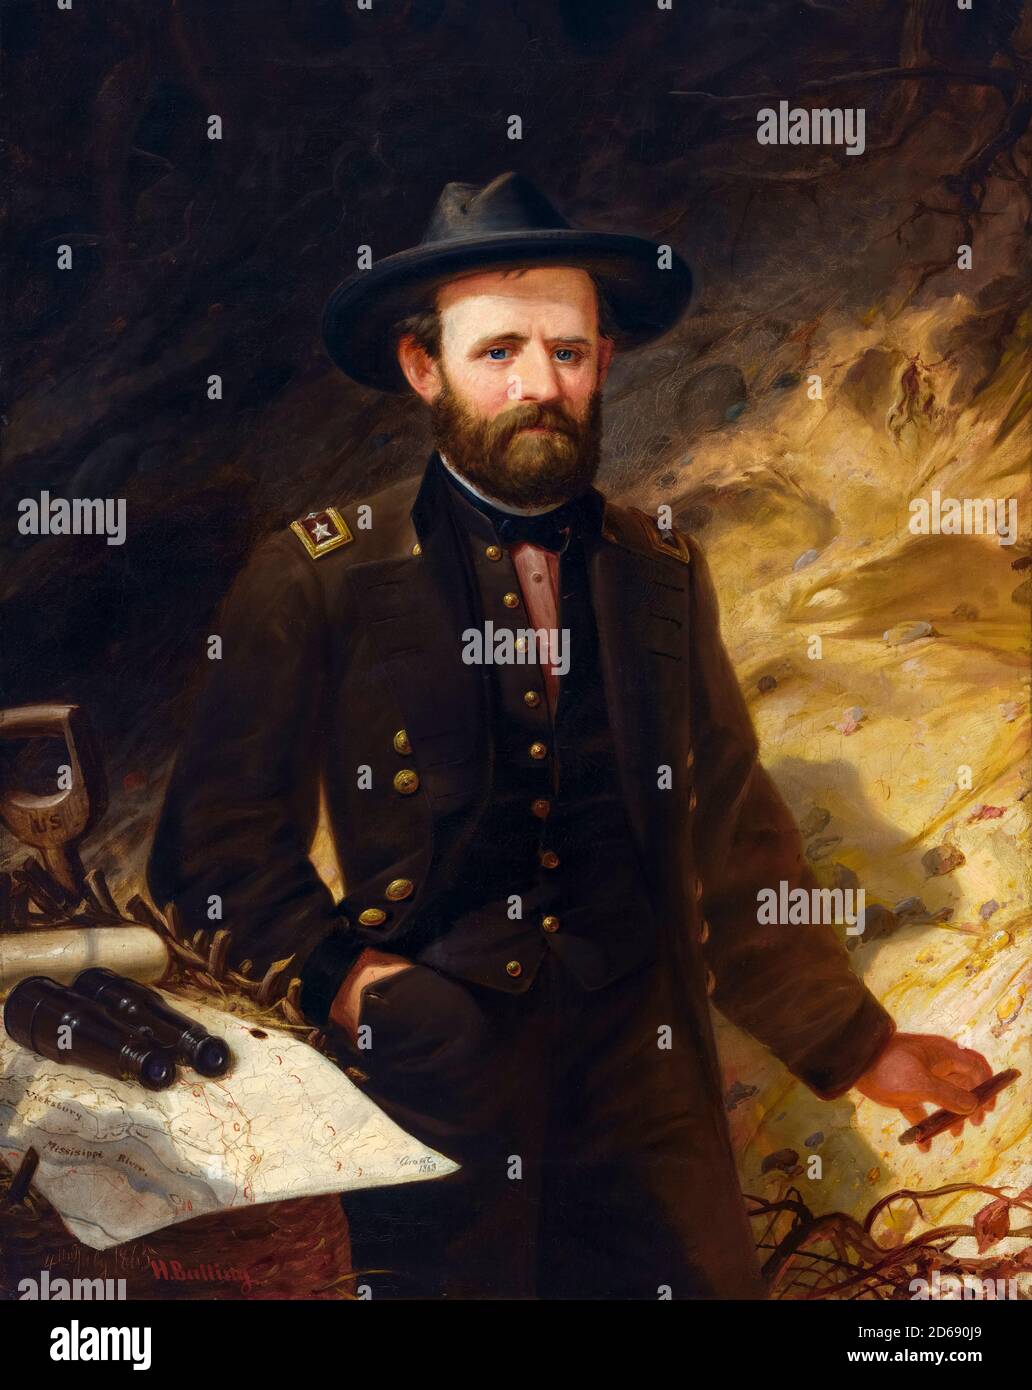 Ulysses S Grant (1822-1885), soldato e politico americano che servì come diciottesimo presidente degli Stati Uniti, dipinto ritratto in uniforme militare di Ole Peter Hansen balling, 1865 Foto Stock